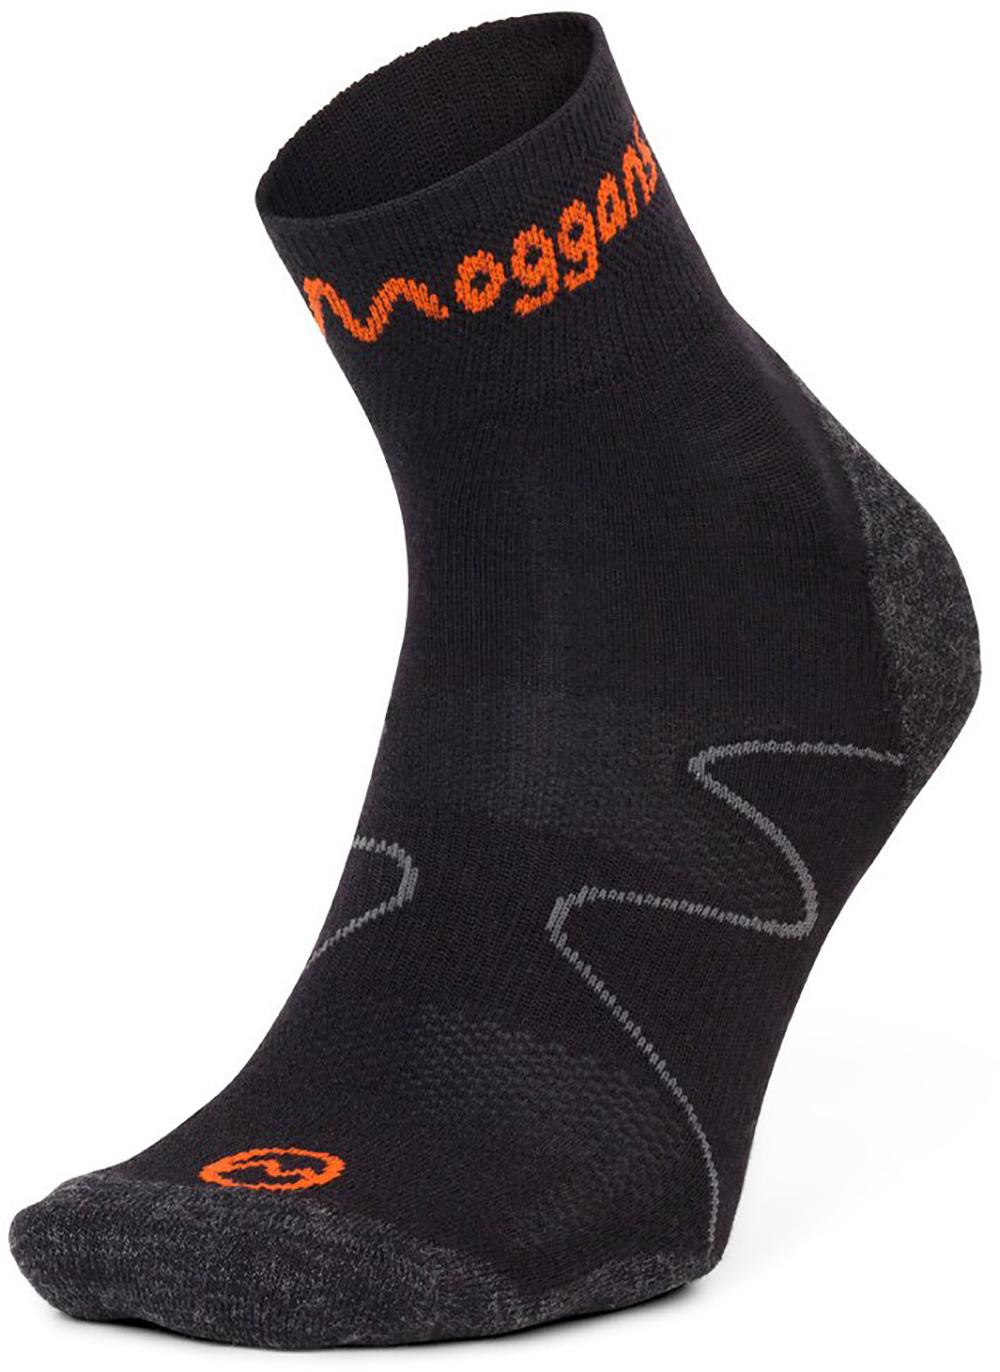 Ultralight Merino Ankle Socks - Black